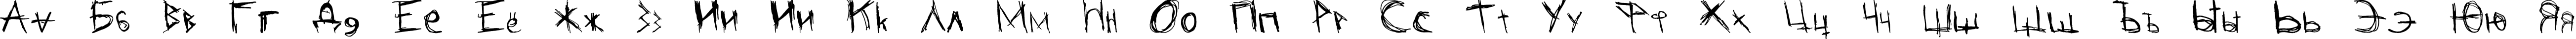 Пример написания русского алфавита шрифтом dorblue